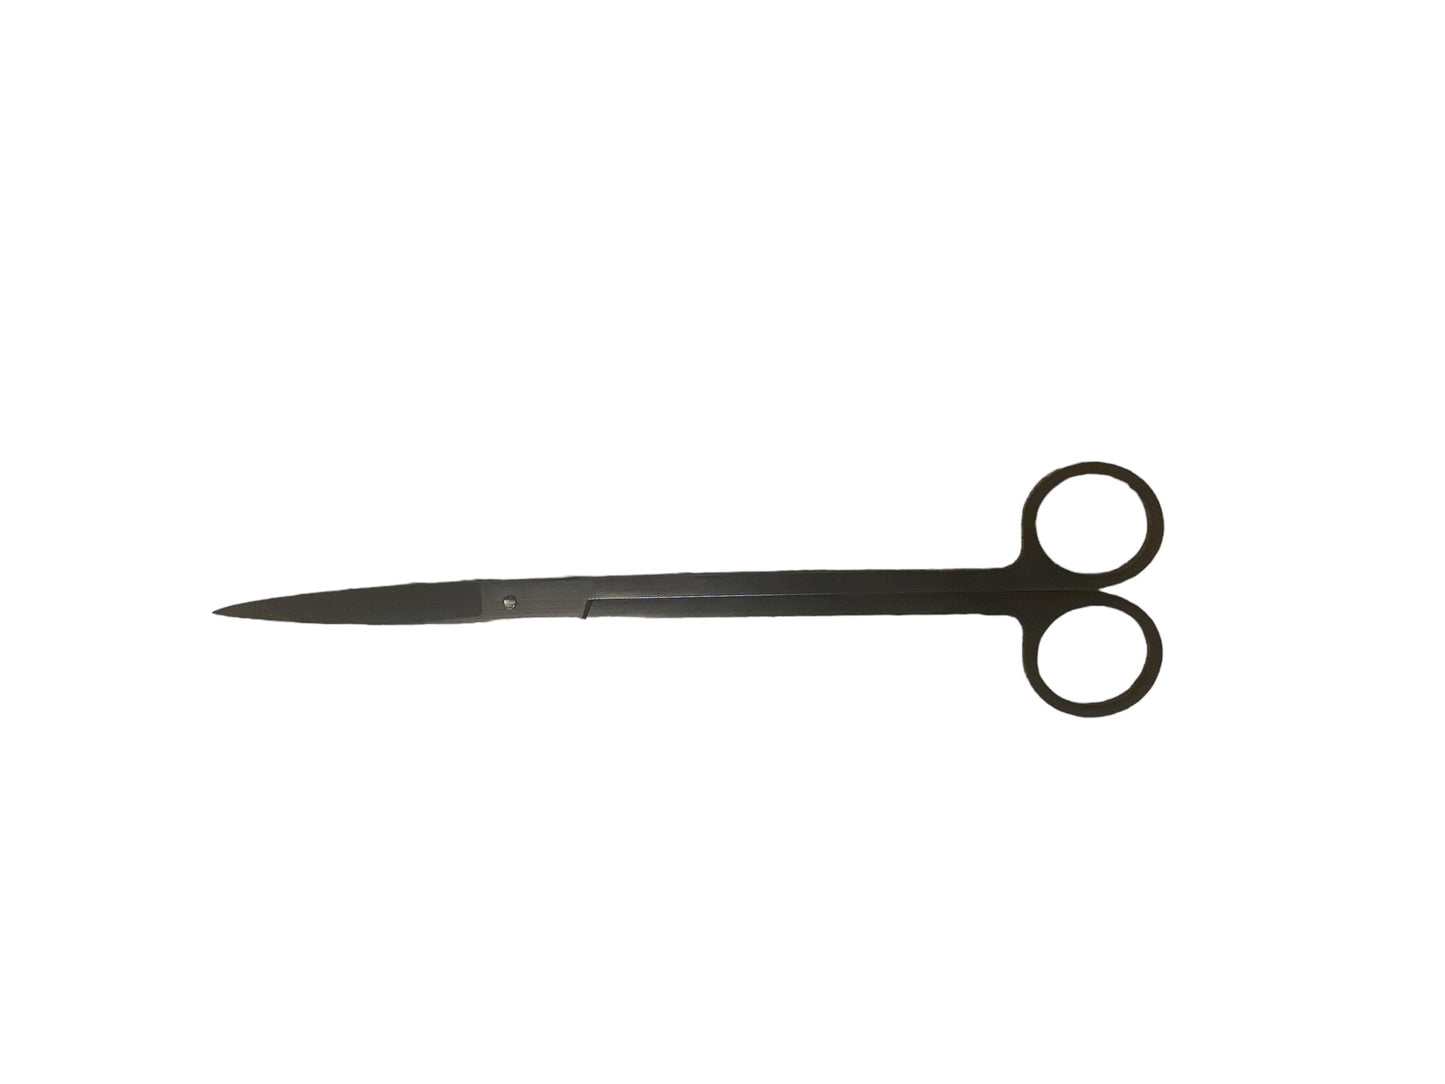 Terrarium scissors